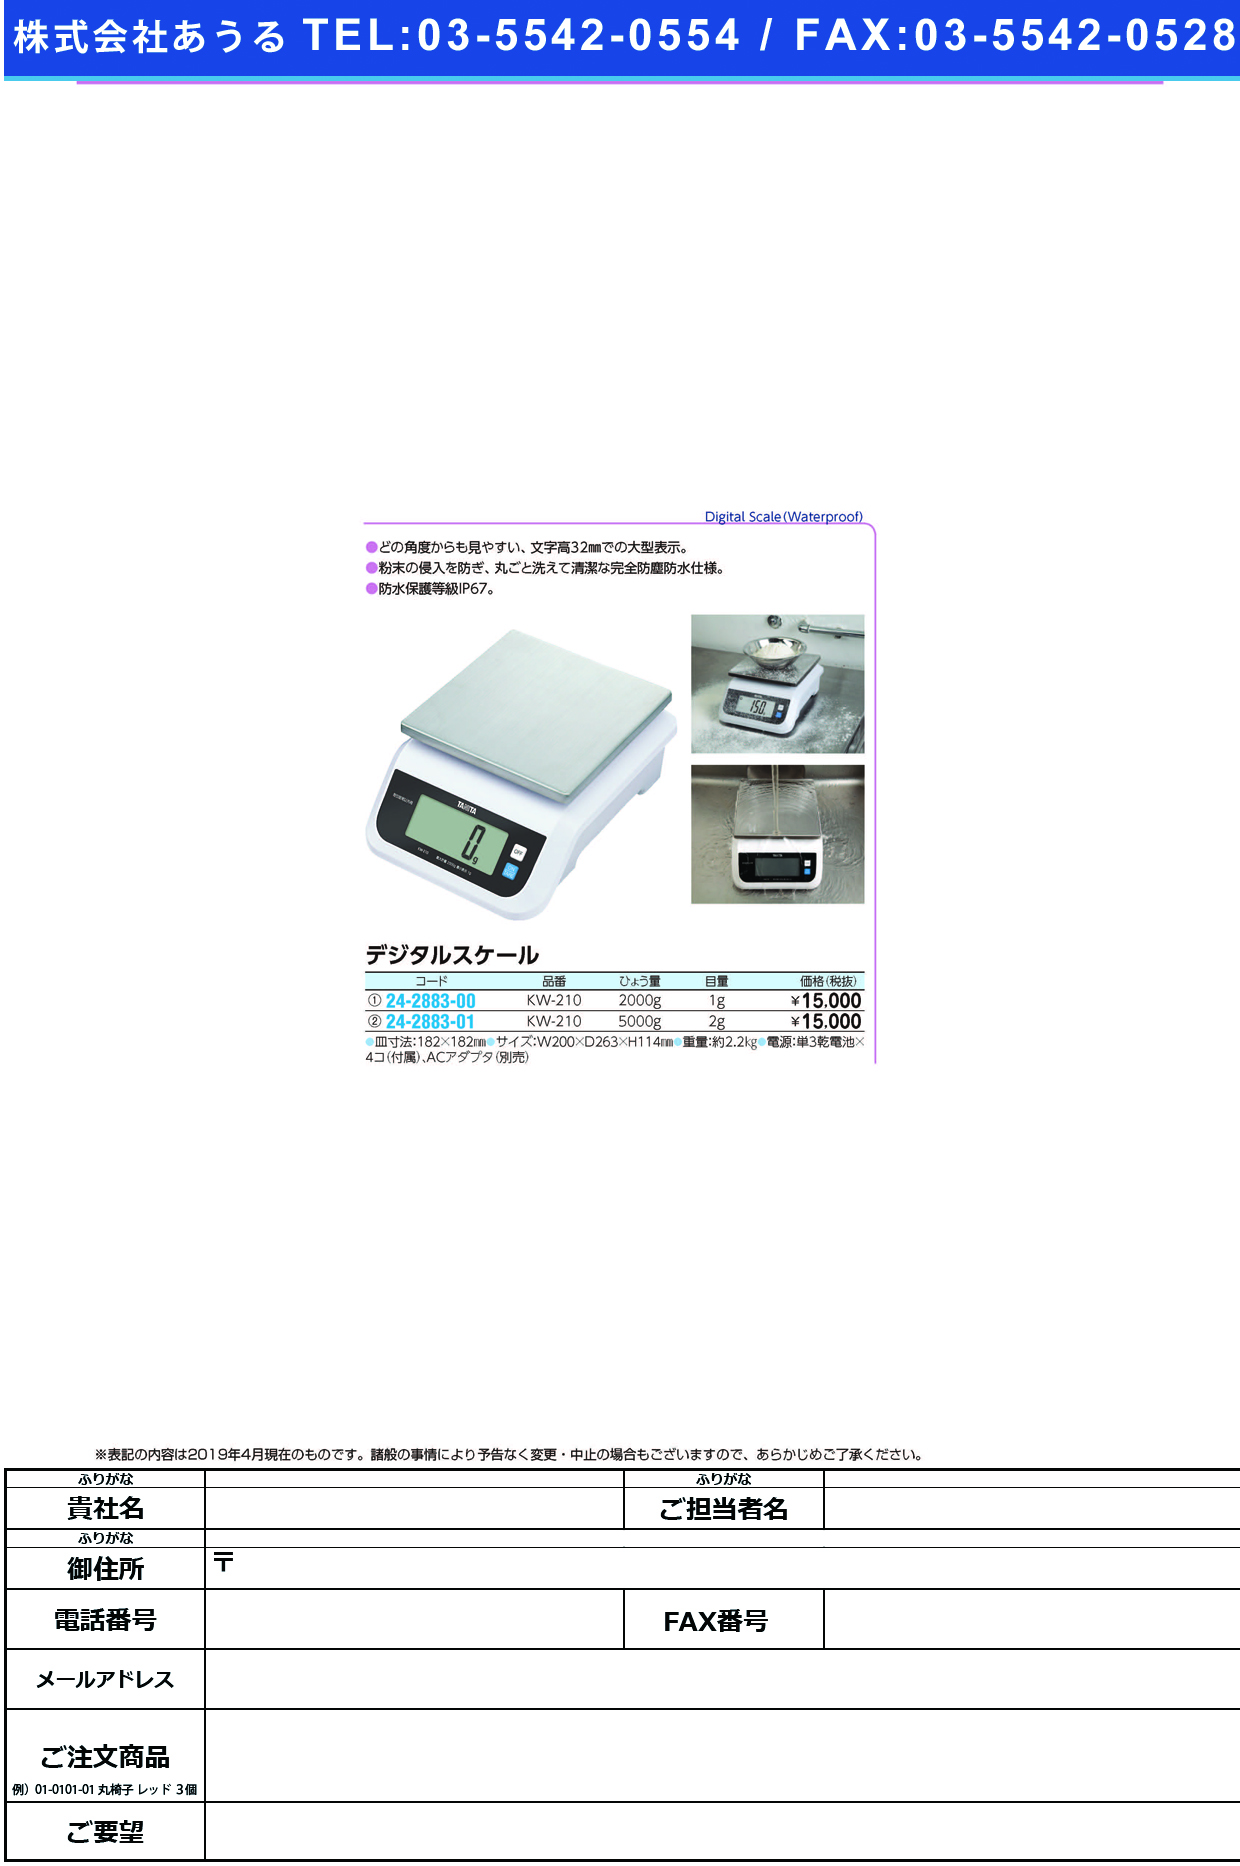 (24-2883-01)デジタルスケール KW-210(5000G) ﾃﾞｼﾞﾀﾙｽｹｰﾙ(タニタ)【1台単位】【2019年カタログ商品】